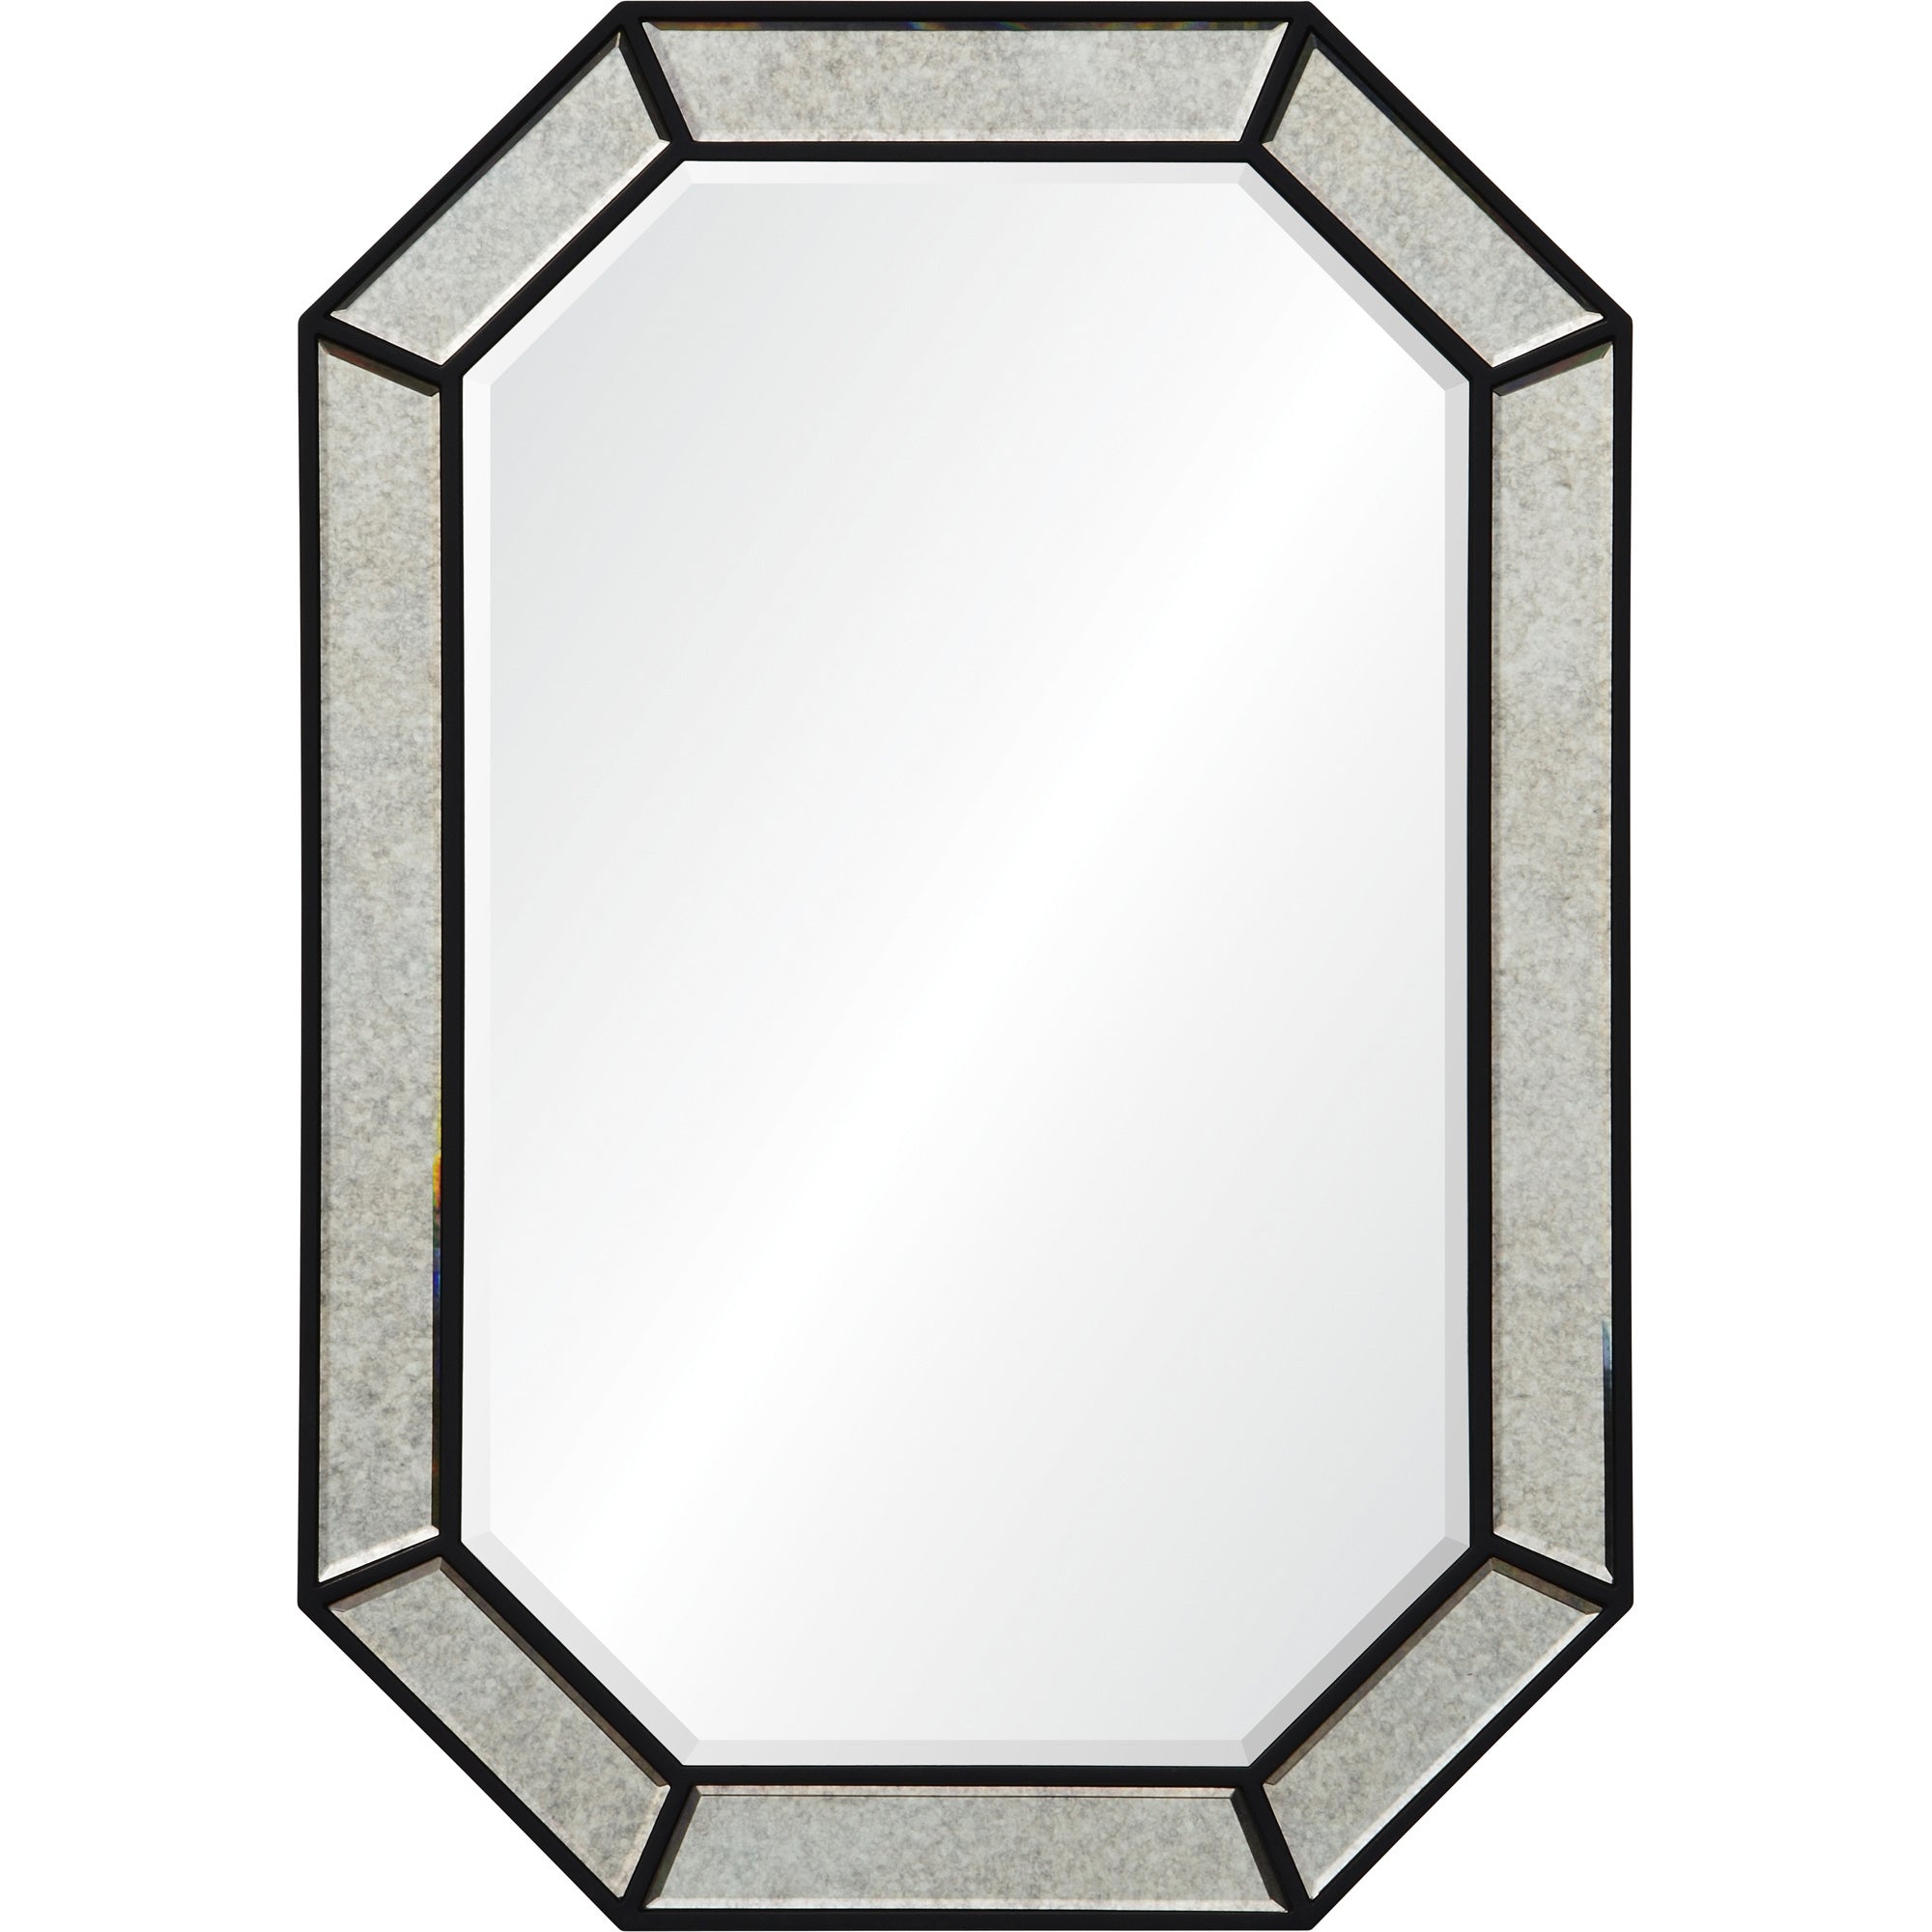 Latimer 31" Black Finish Mirror